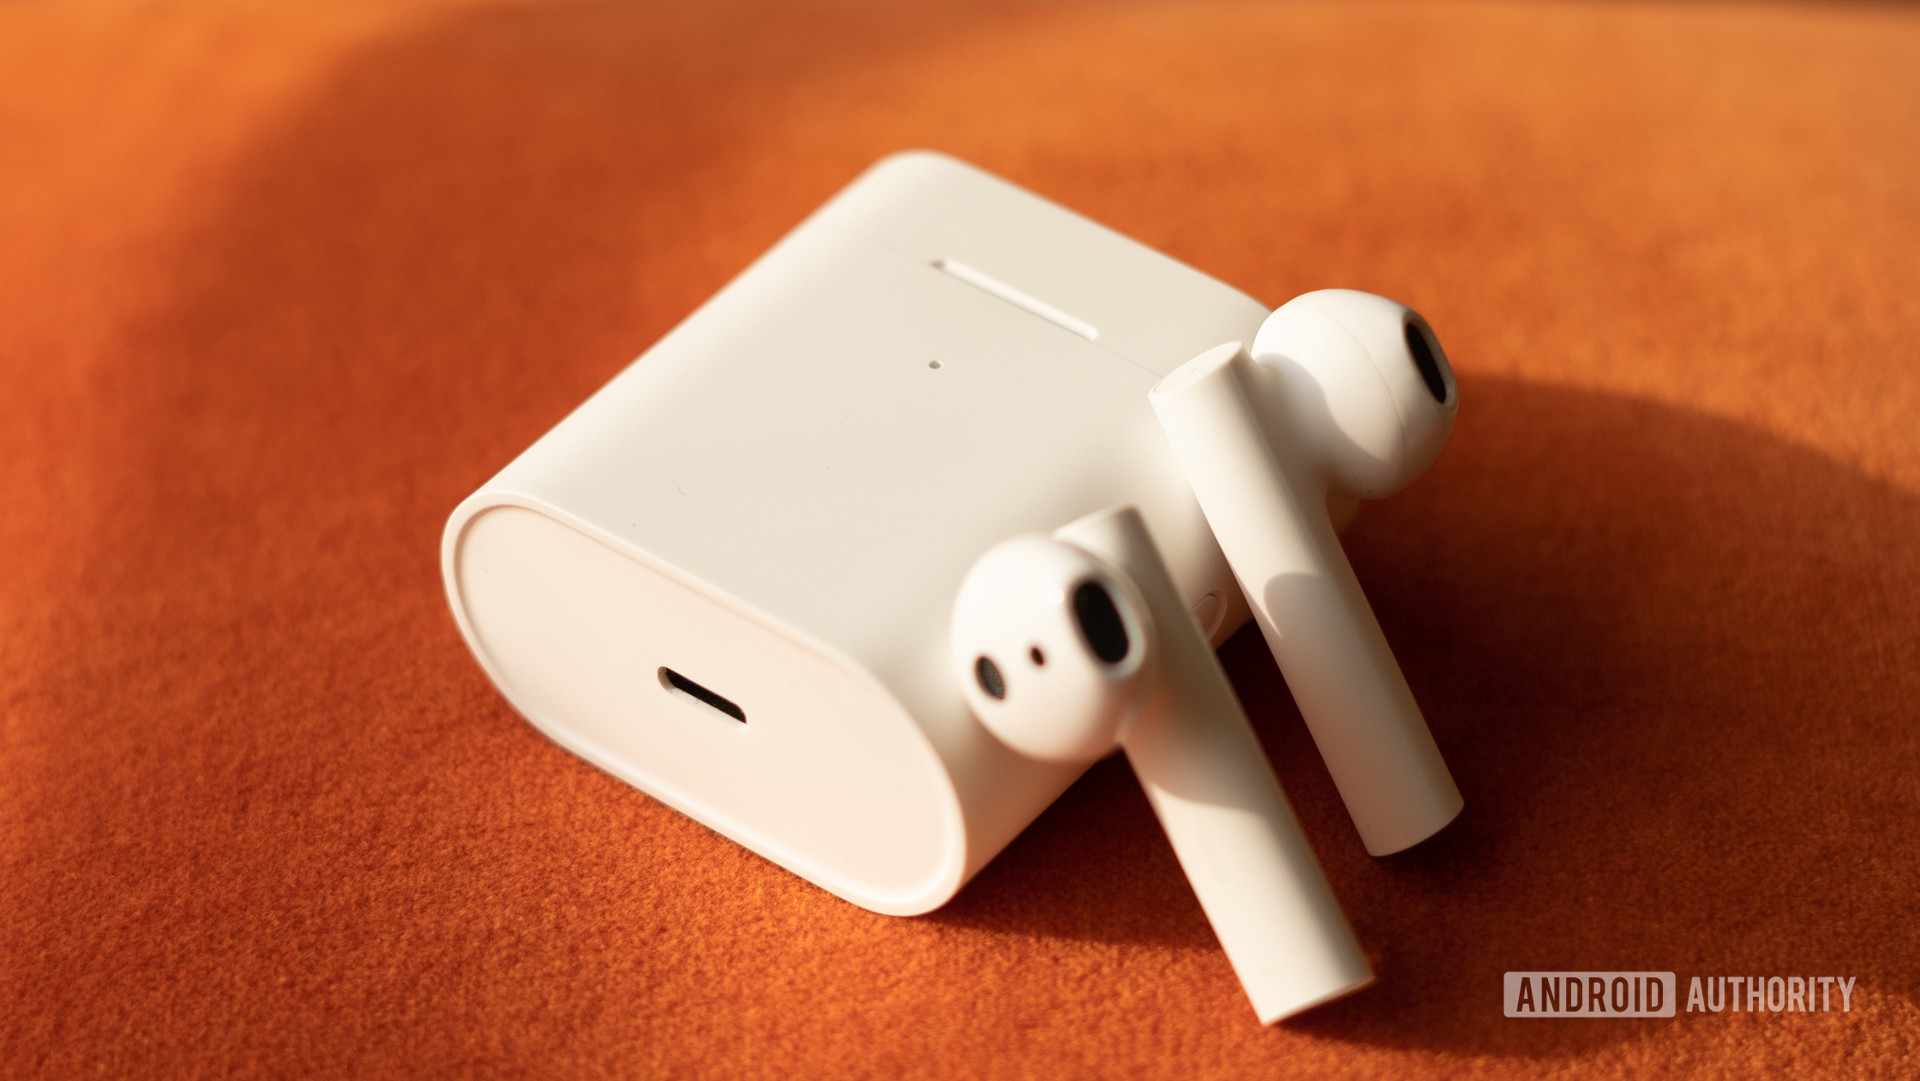 Image of Xiaomi True Wireless Earphones 2 USB C charging port